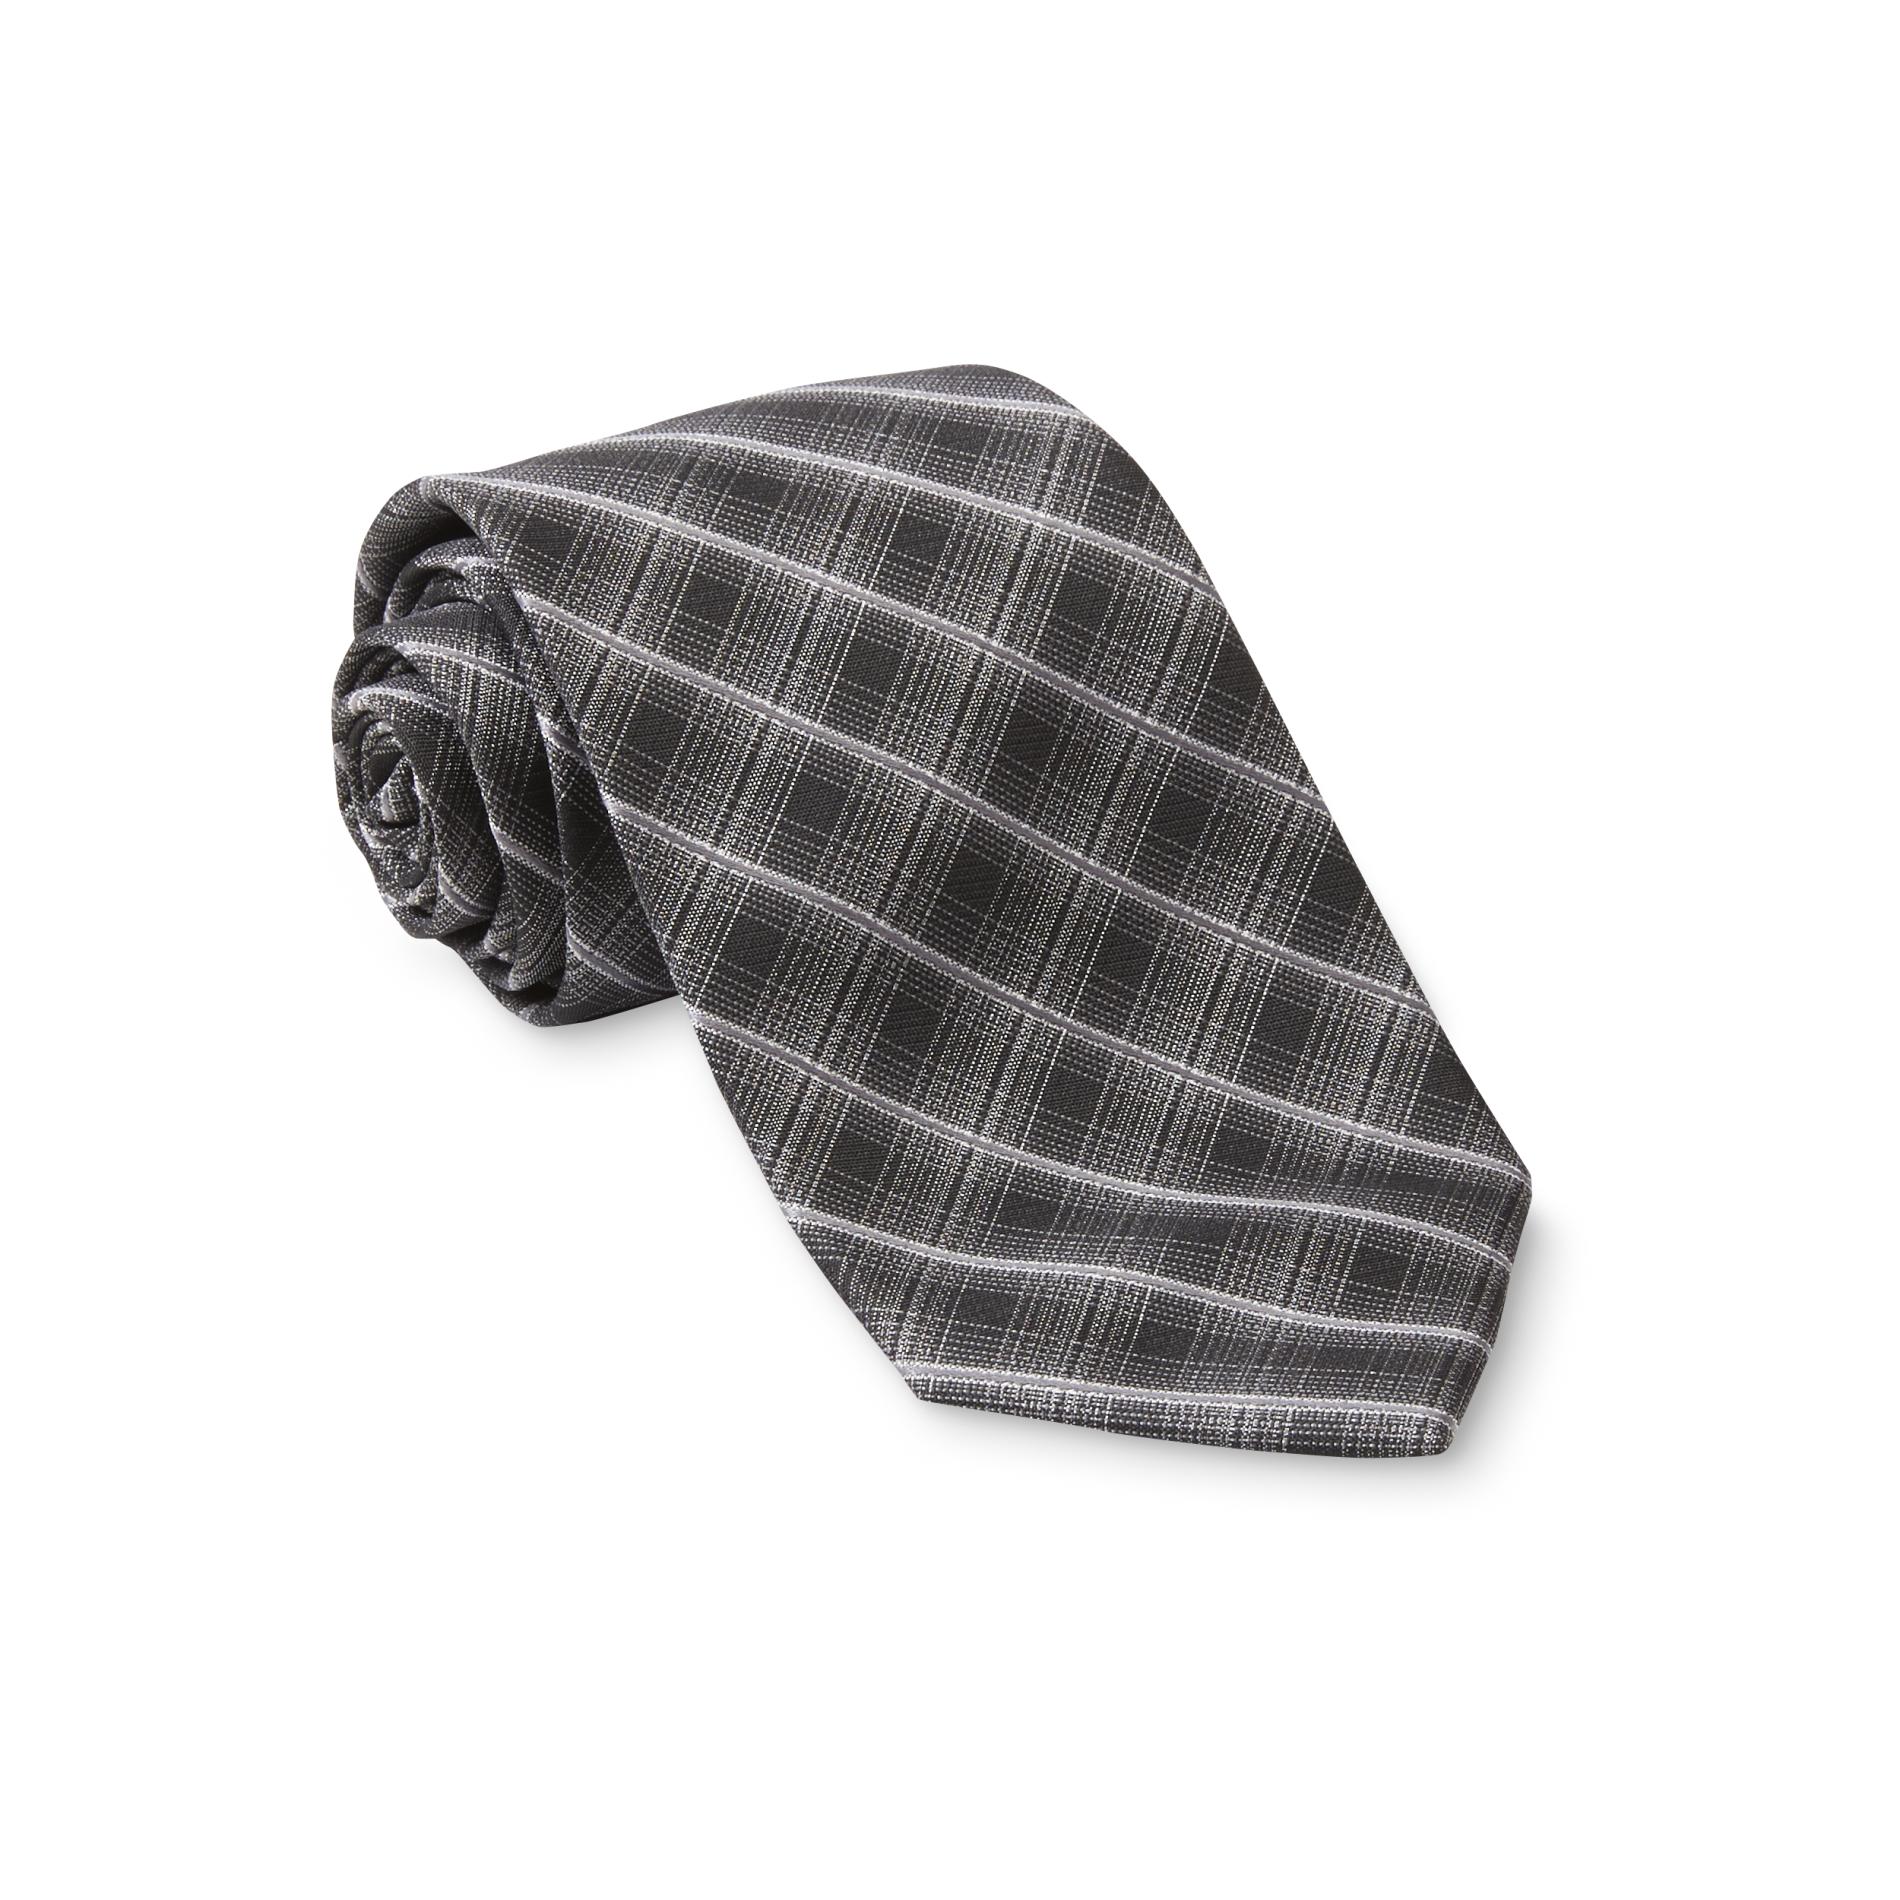 David Taylor Collection Men's Necktie - Plaid